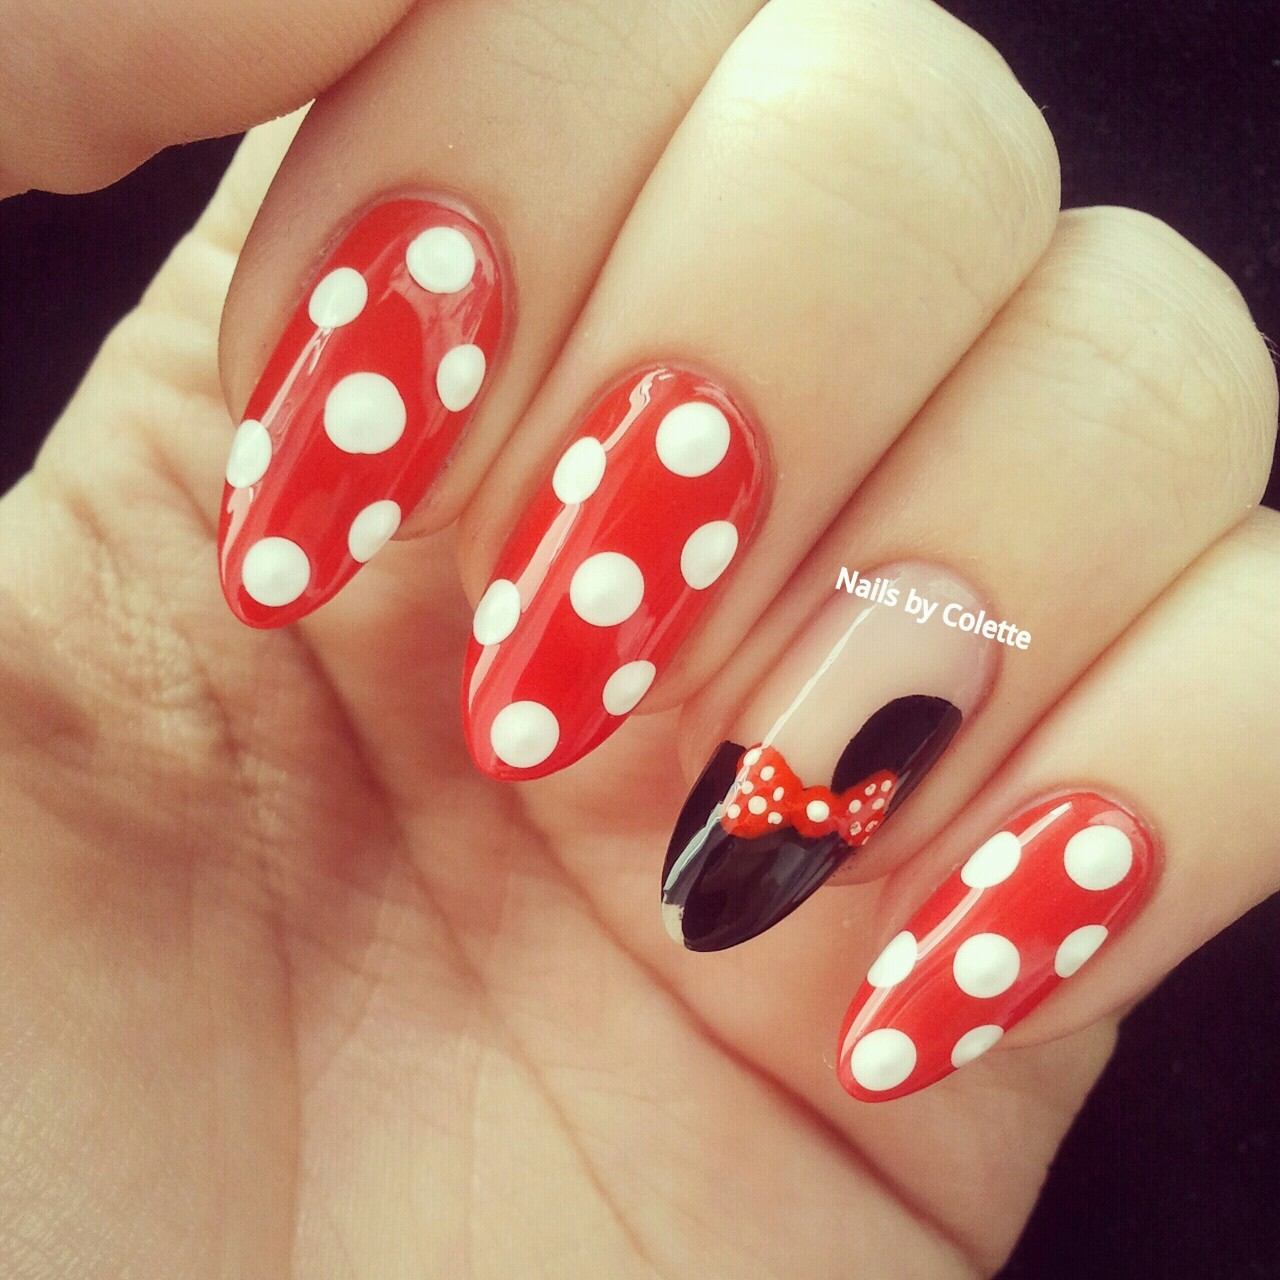 Stiletto nail enthusiast - Minnie Mouse nails!